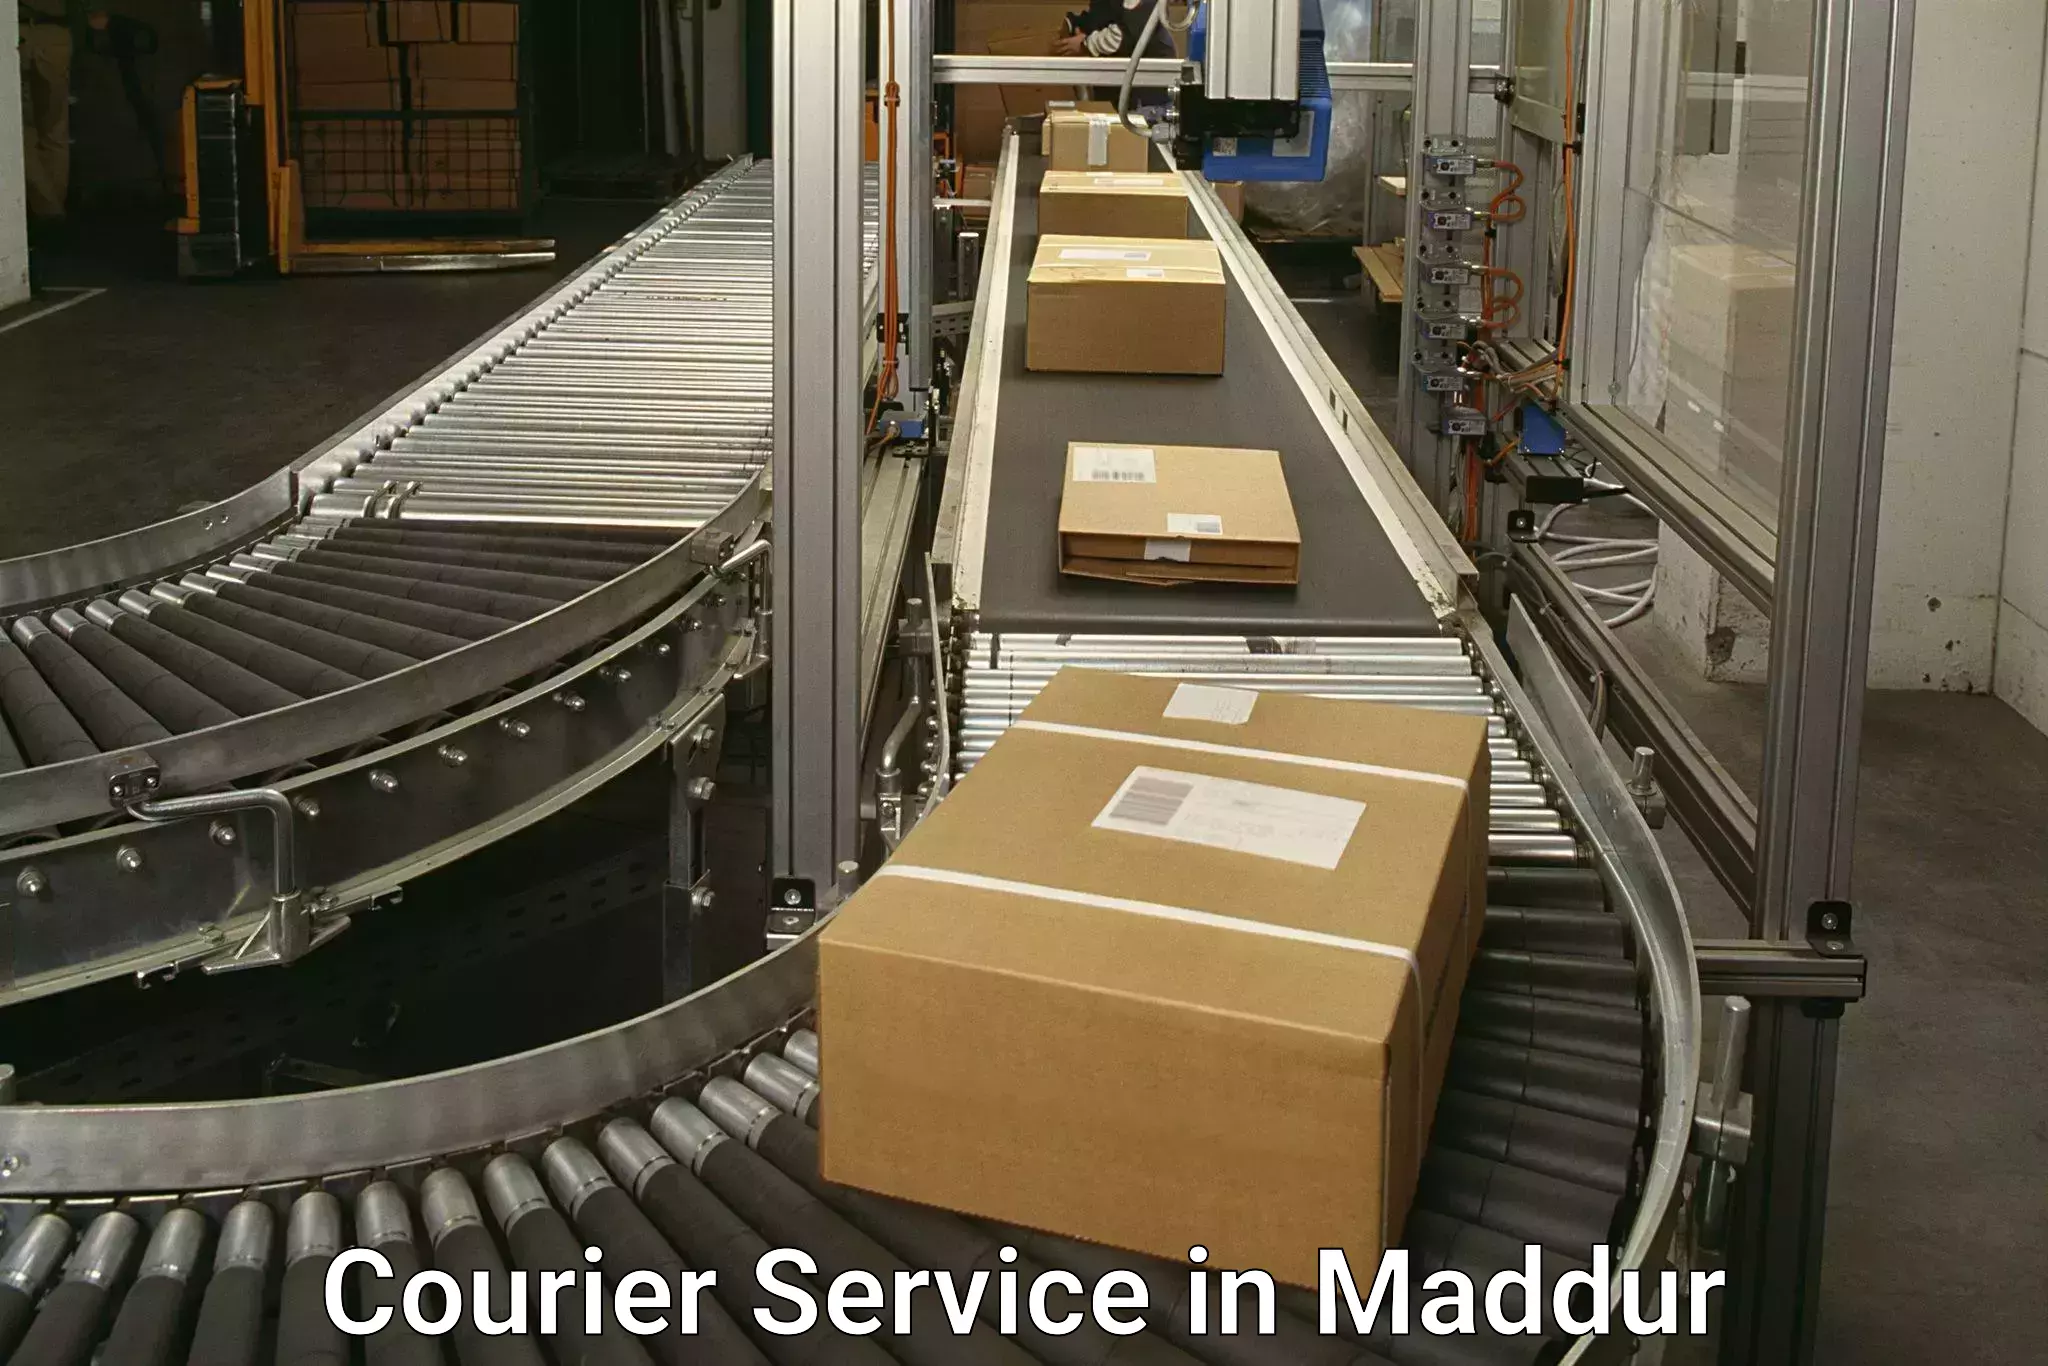 Express logistics in Maddur